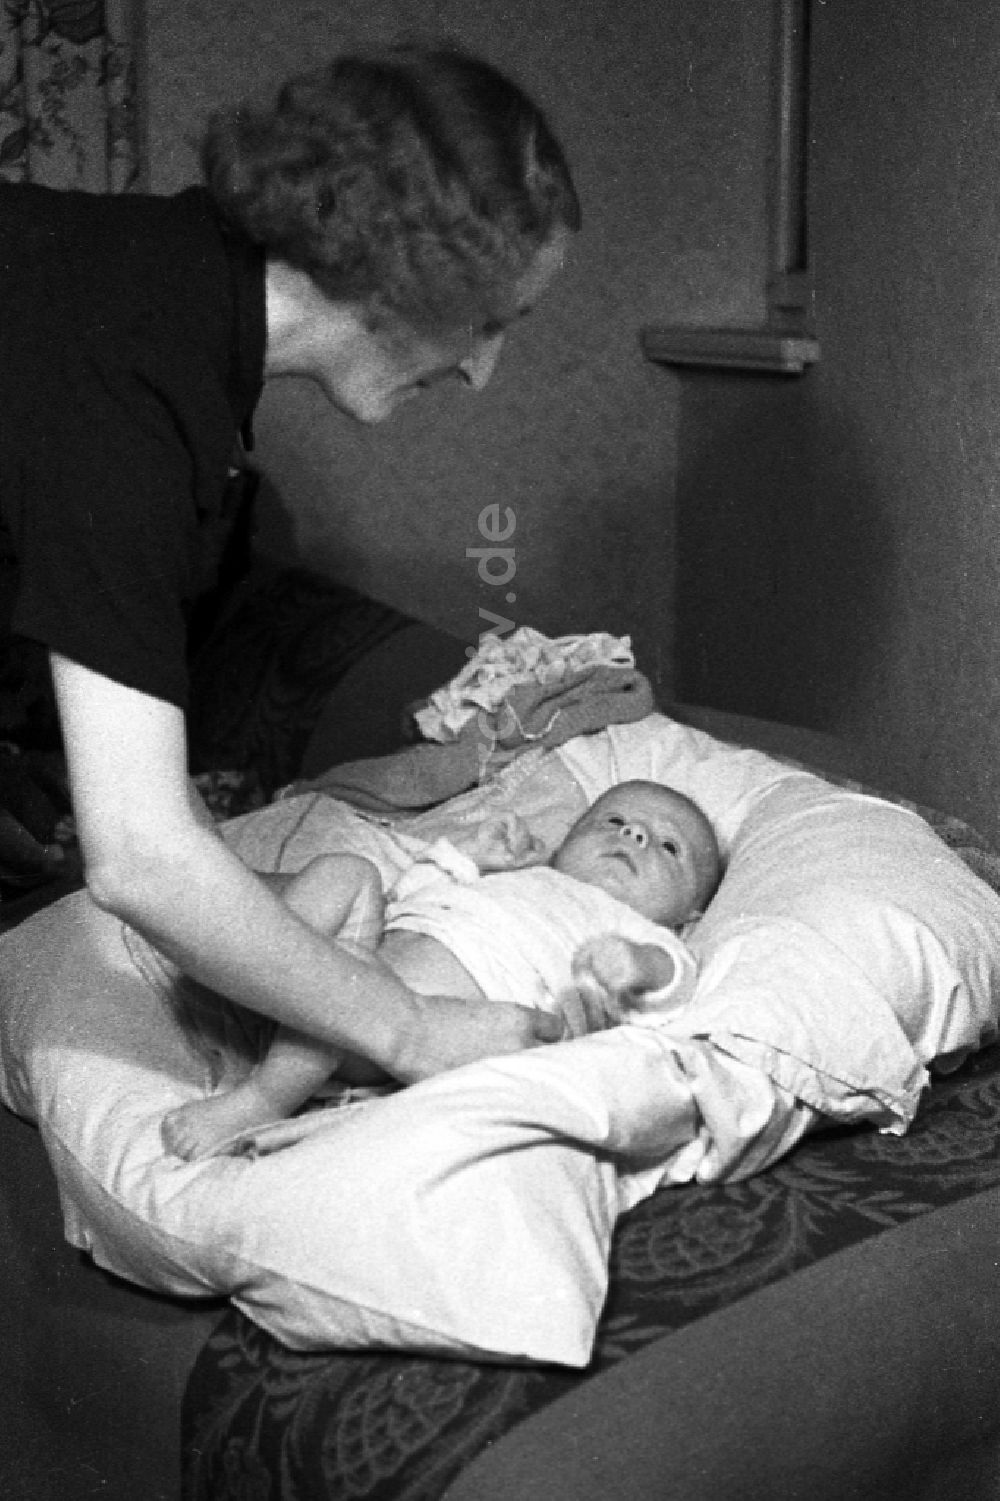 DDR-Fotoarchiv: Merseburg - Eine Mutter wickelt ihr Kind auf einem Kopfkissen in Merseburg in Sachsen-Anhalt in der DDR